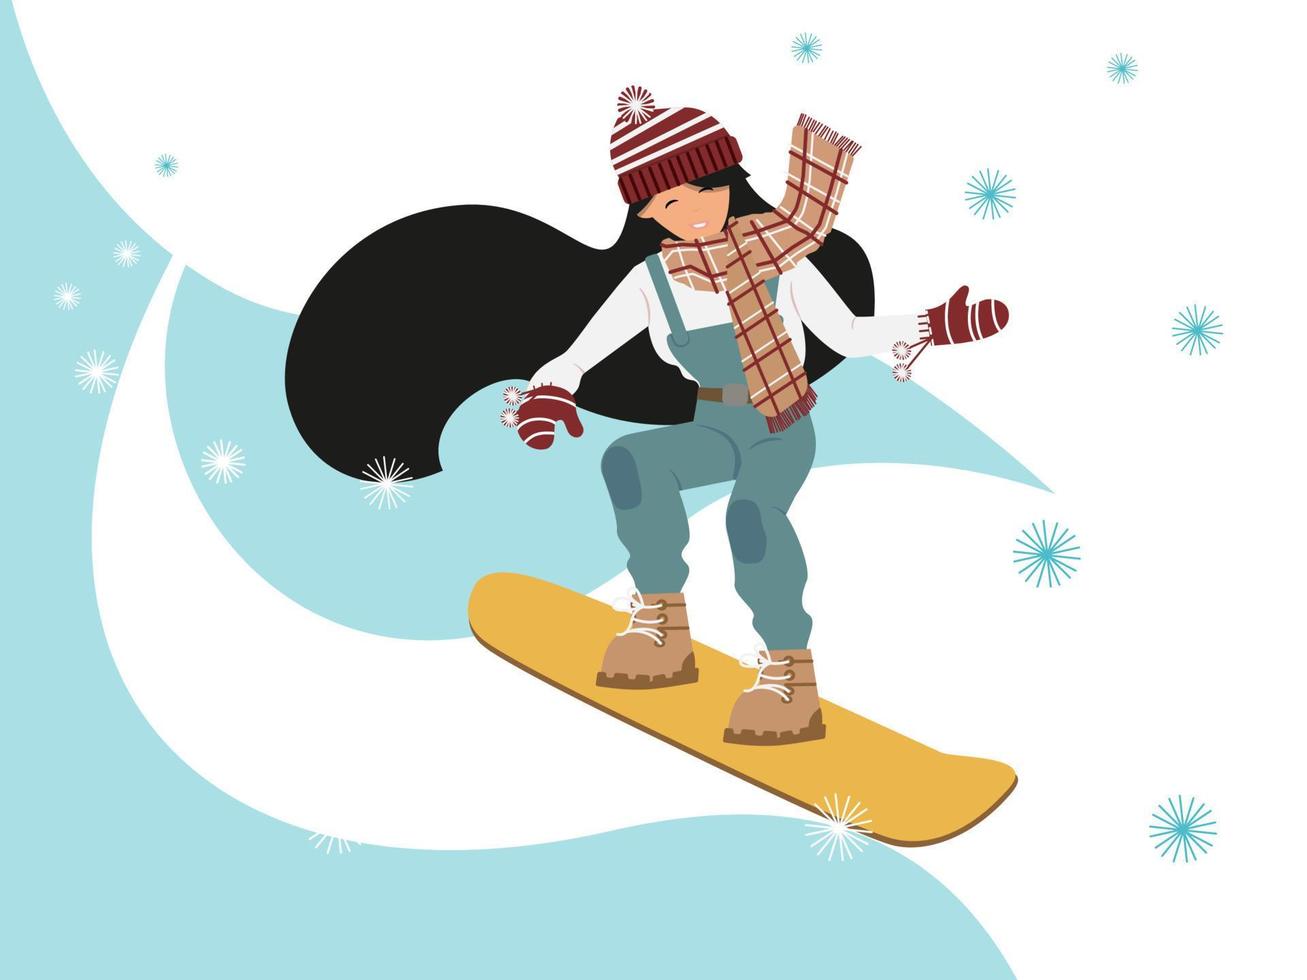 jeune fille faisant du snowboard sur une montagne enneigée, illustration vectorielle, pour la conception de sports extrêmes, cartes, dépliants ou élément de composition vecteur